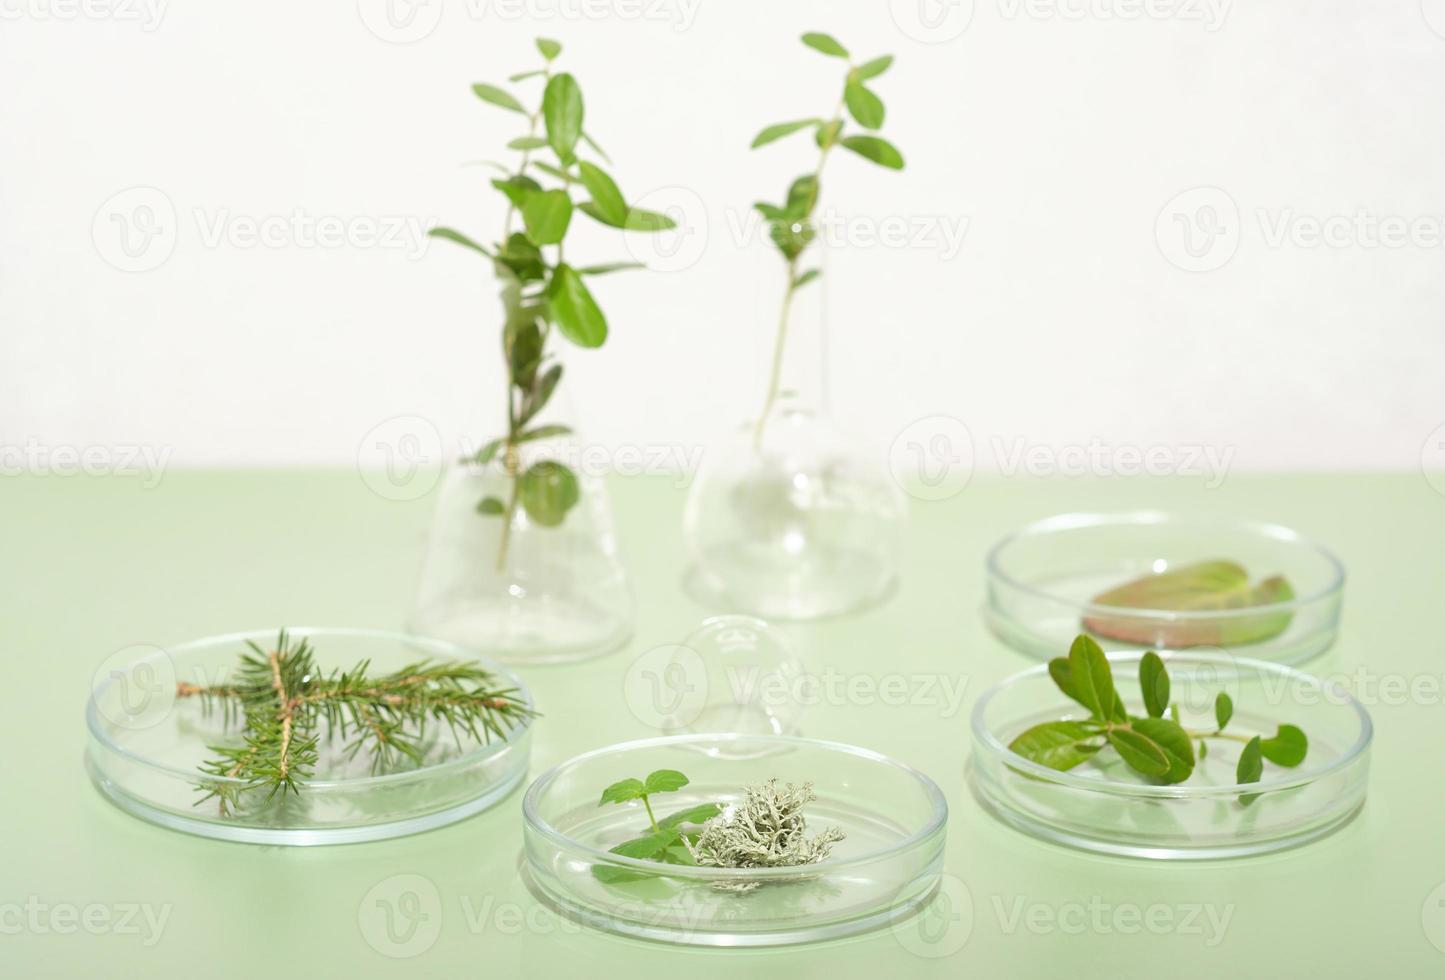 plantas verdes, hojas y hierbas en placas de petri sobre fondo verde claro. investigación biotecnológica, ingredientes cultivados en bosques silvestres para productos cosméticos o farmacéuticos. foto